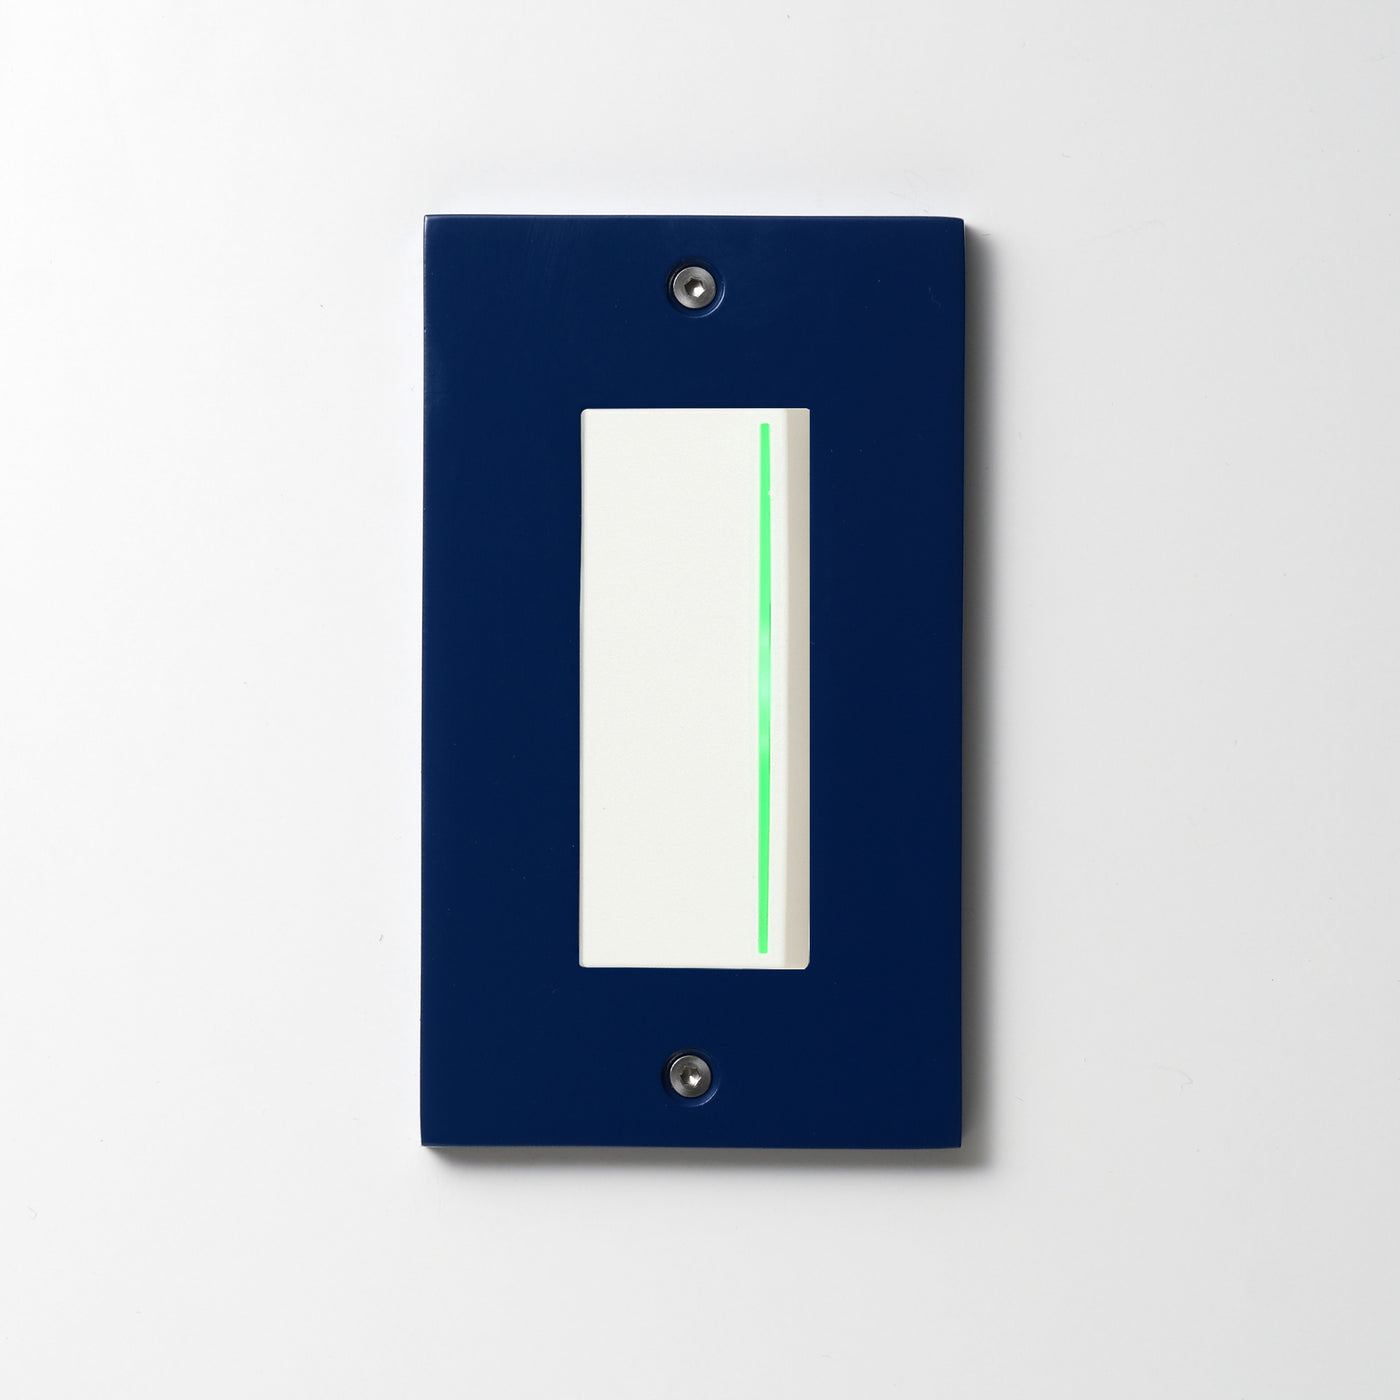 アルミダイキャスト（ブルー）プレート  <br>+ NK 片切、3路ガイドランプ（グリーン）付スイッチシングル  ホワイト